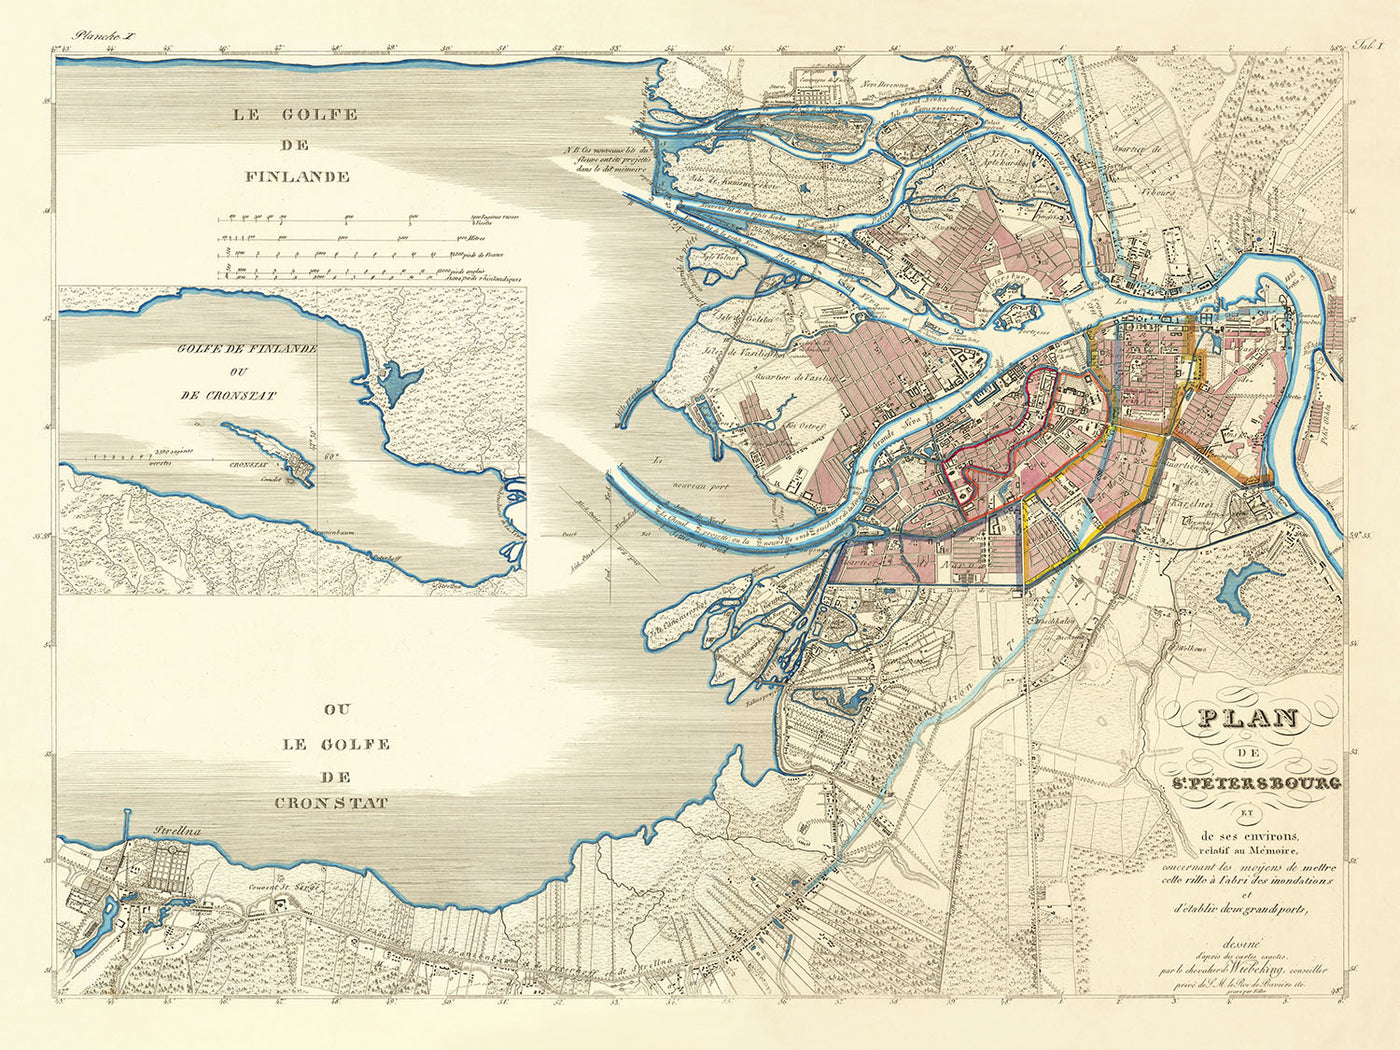 Mapa antiguo de San Petersburgo de Wiebeking, 1840: Nevsky Prospect, isla Vasilievsky, río Fontanka, terraplén del Almirantazgo, inundaciones de 1824